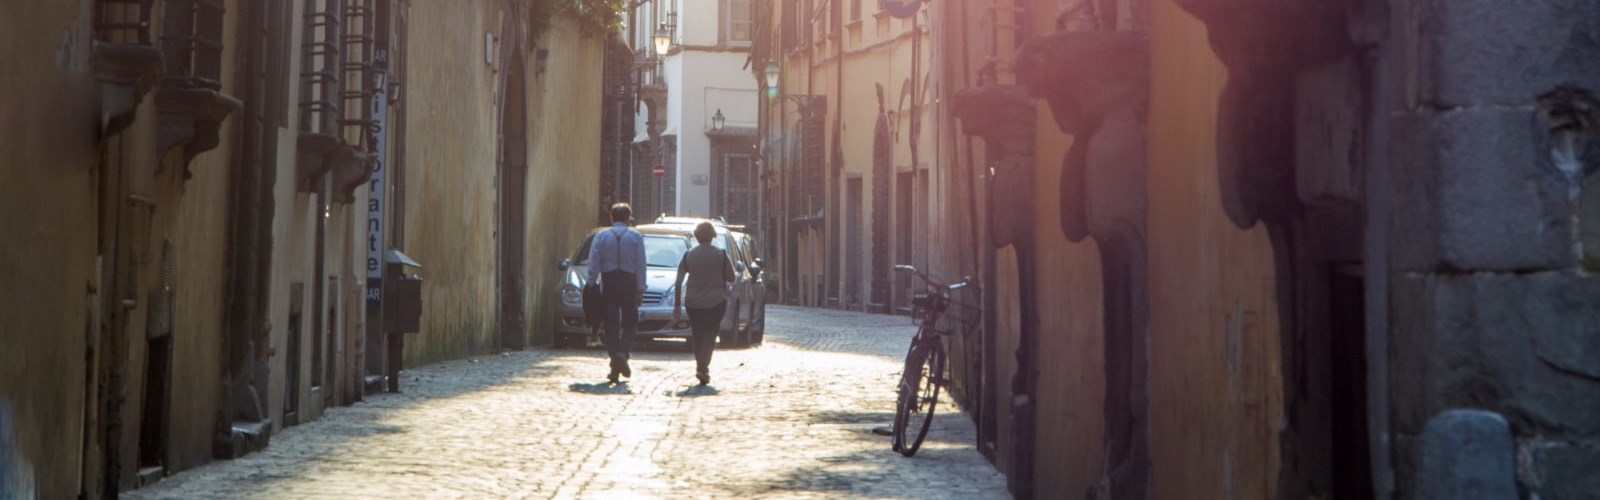 Gadebillede fra Lucca